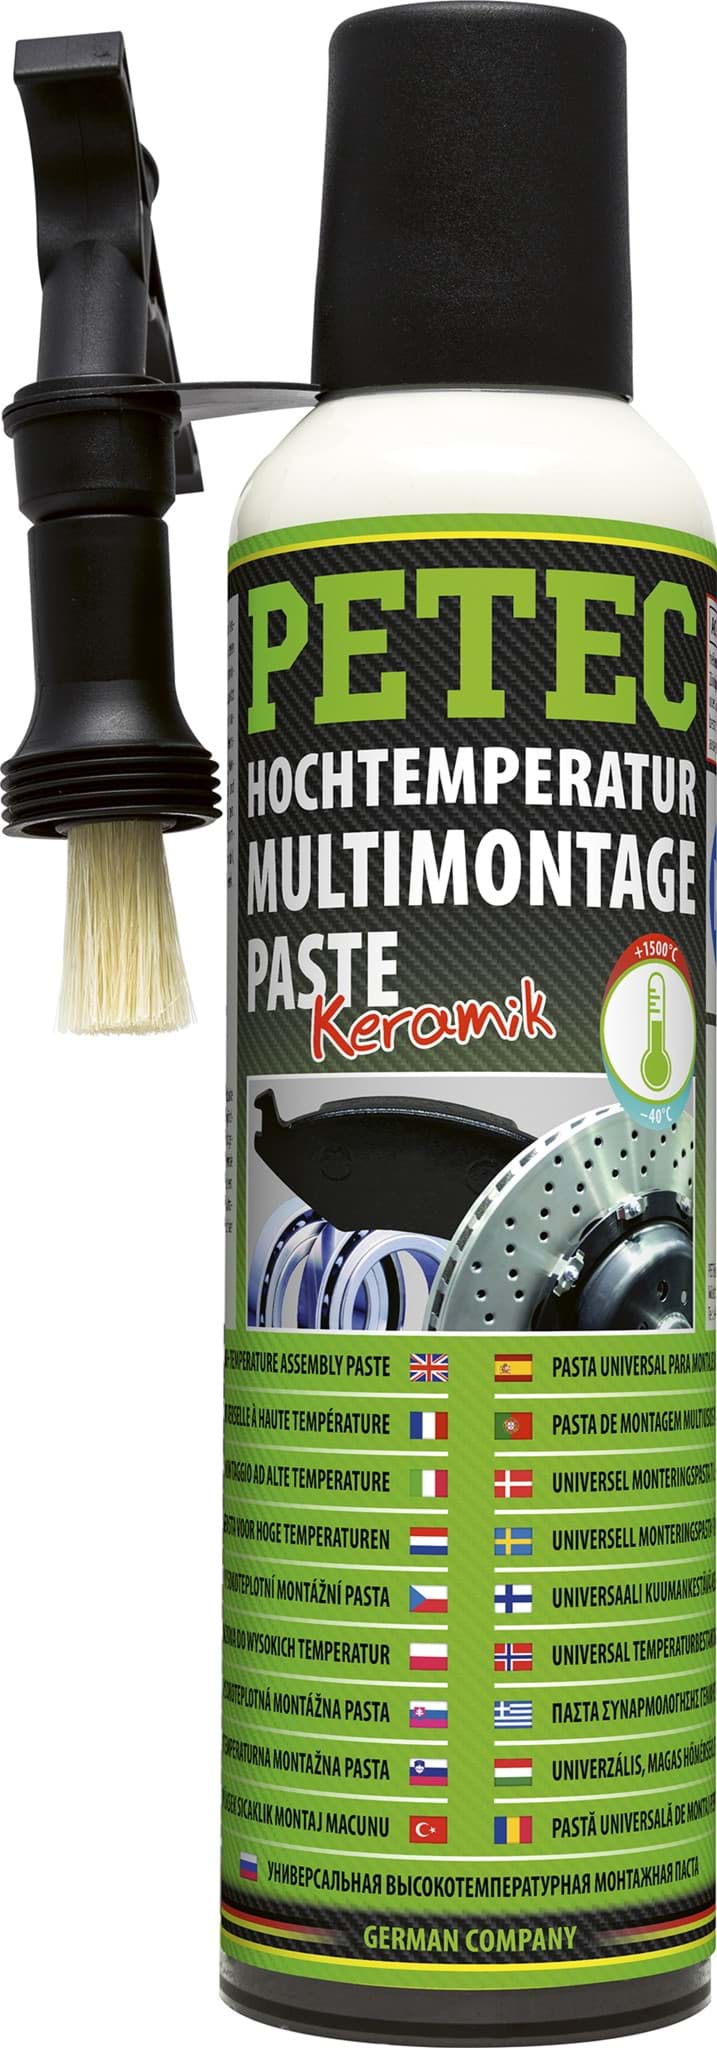 Obraz Petec Hochtemperatur Montagepaste Keramikpaste bis 1500°C